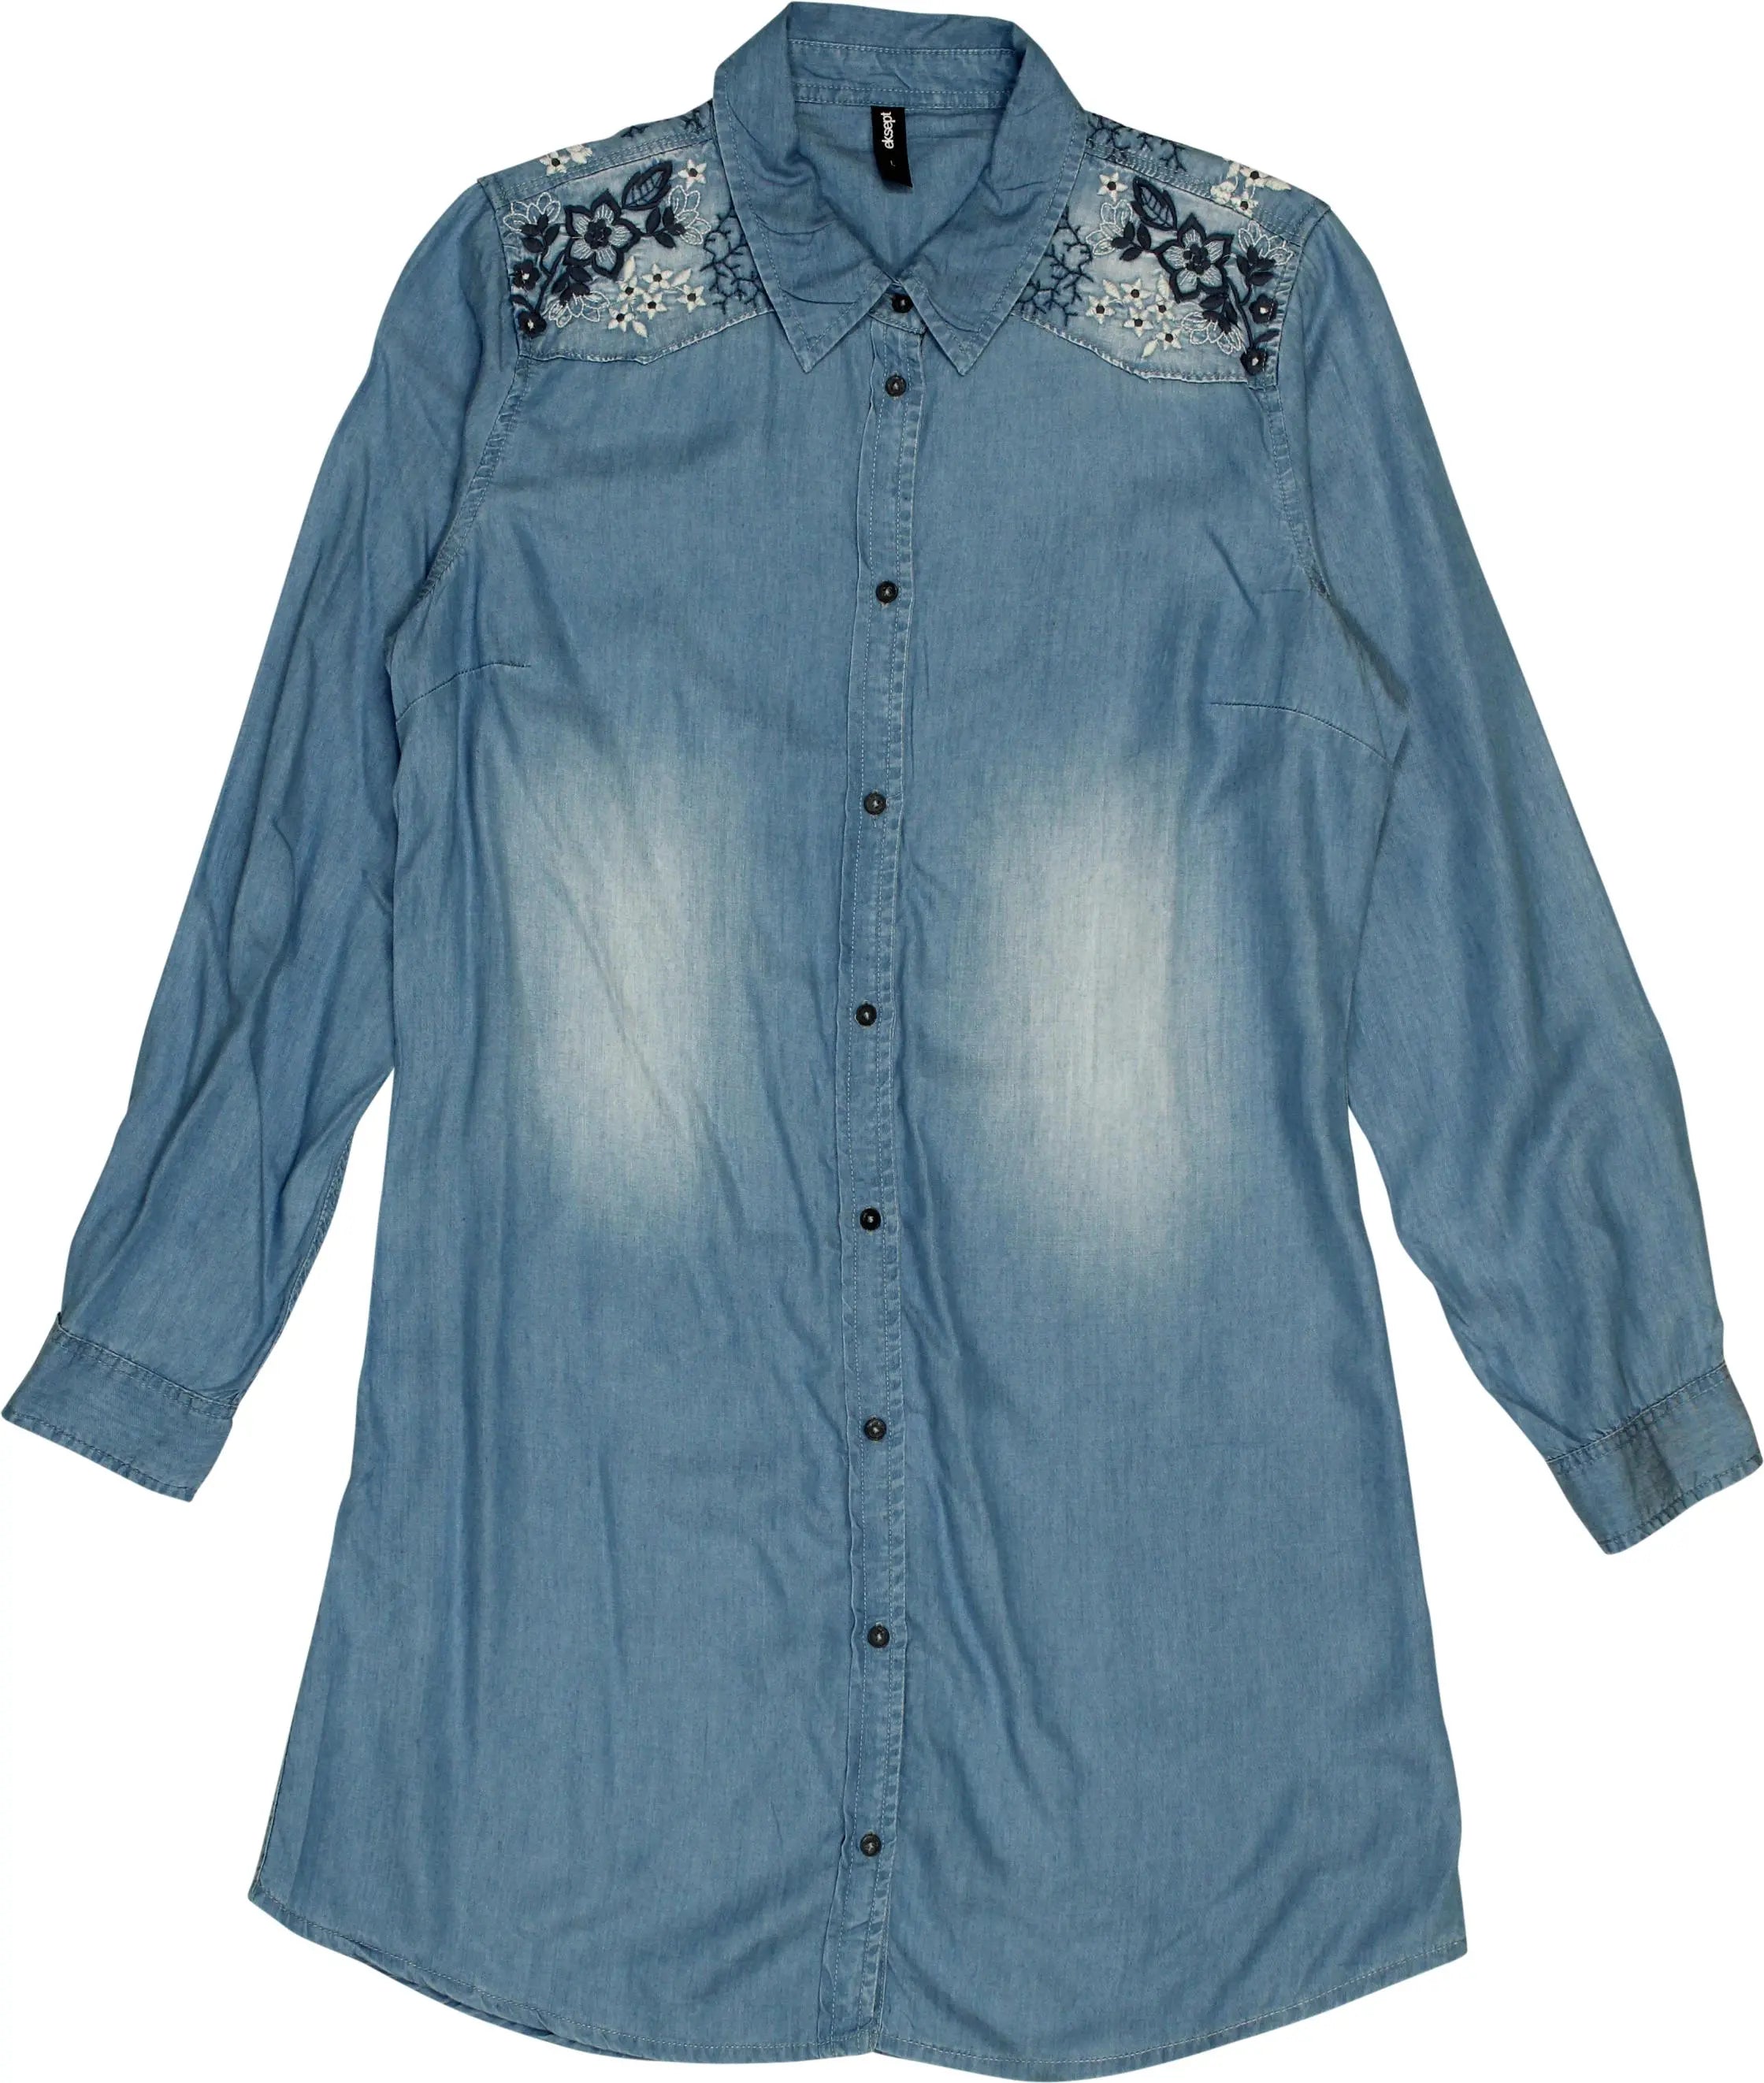 Eksept - Denim Dress- ThriftTale.com - Vintage and second handclothing